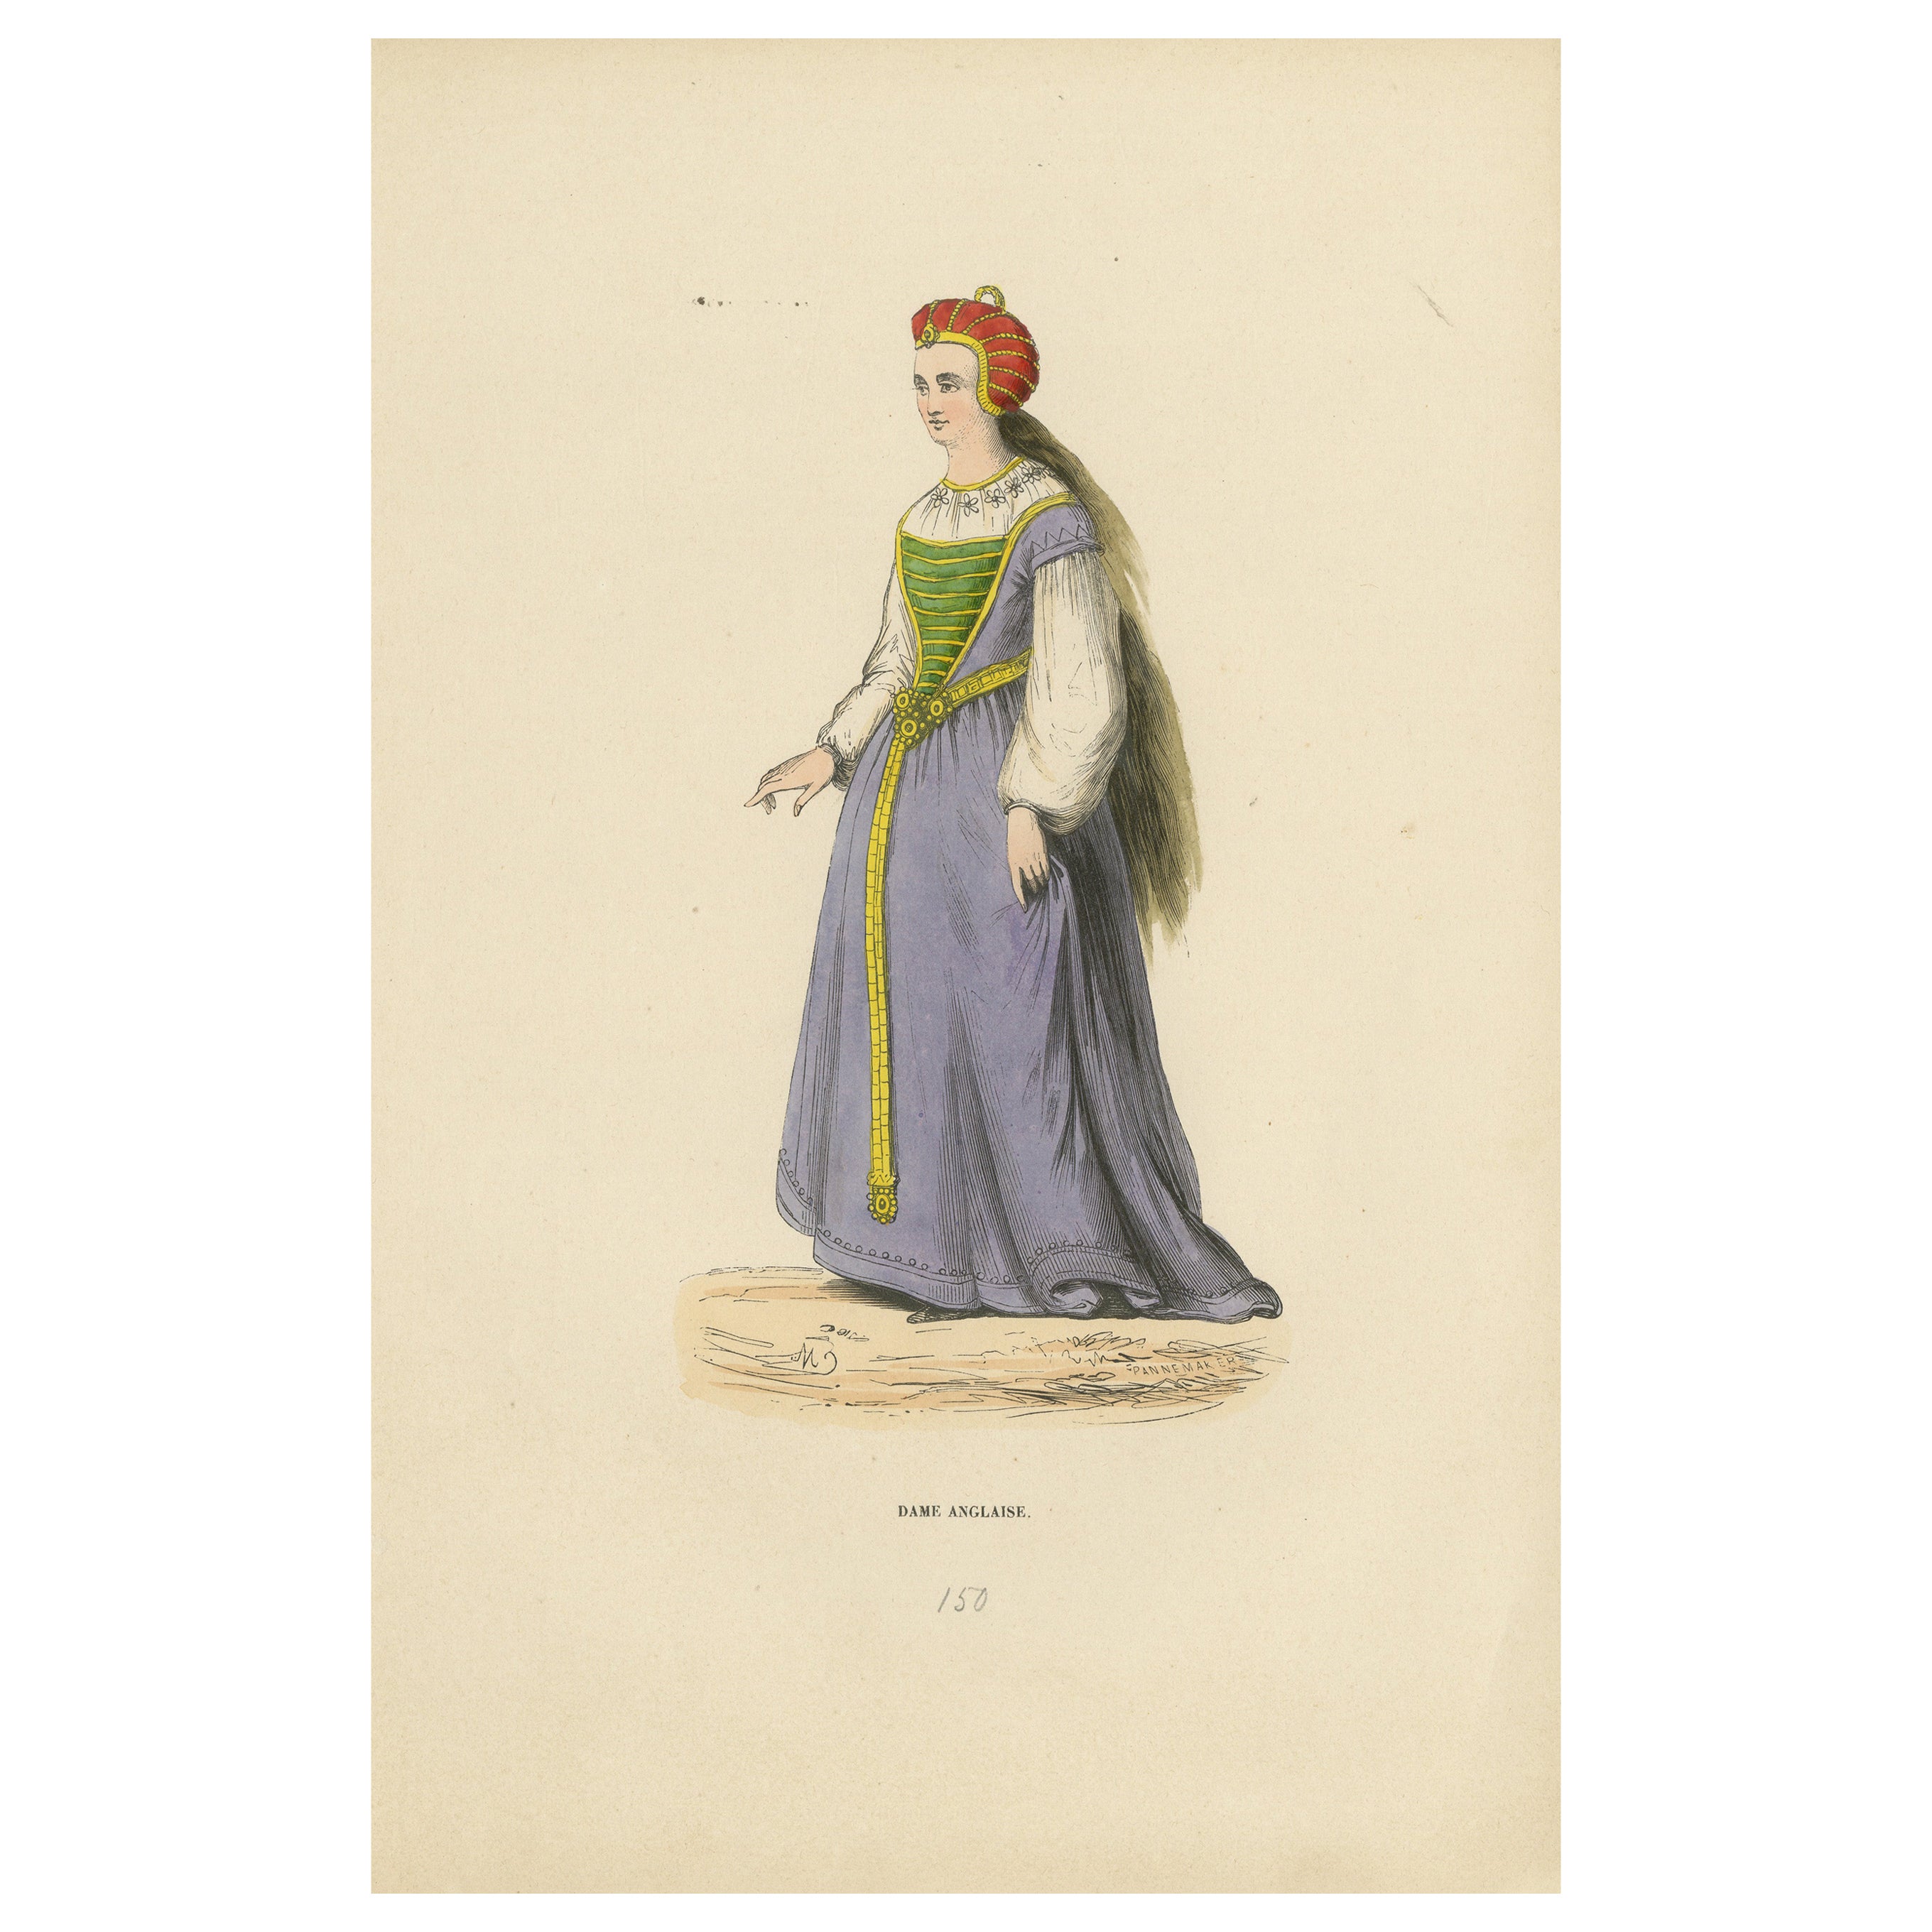 Le raffinement de la Renaissance : Une dame anglaise en costume du Moyen Âge, 1847